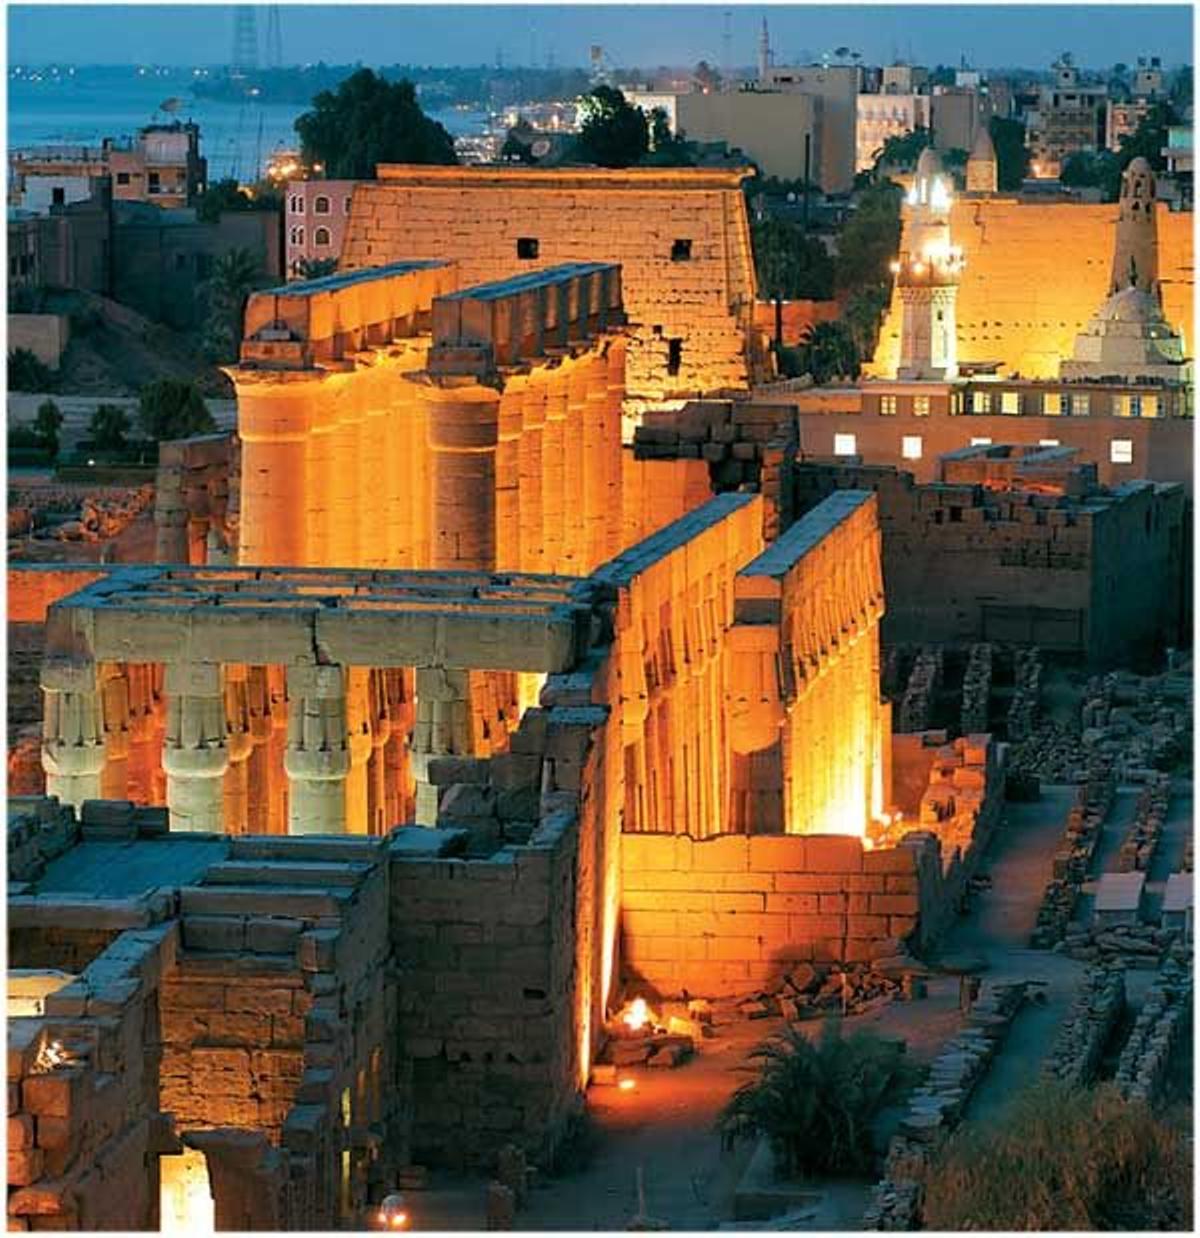 Luxor de noche. Los templos iluminados impresionan